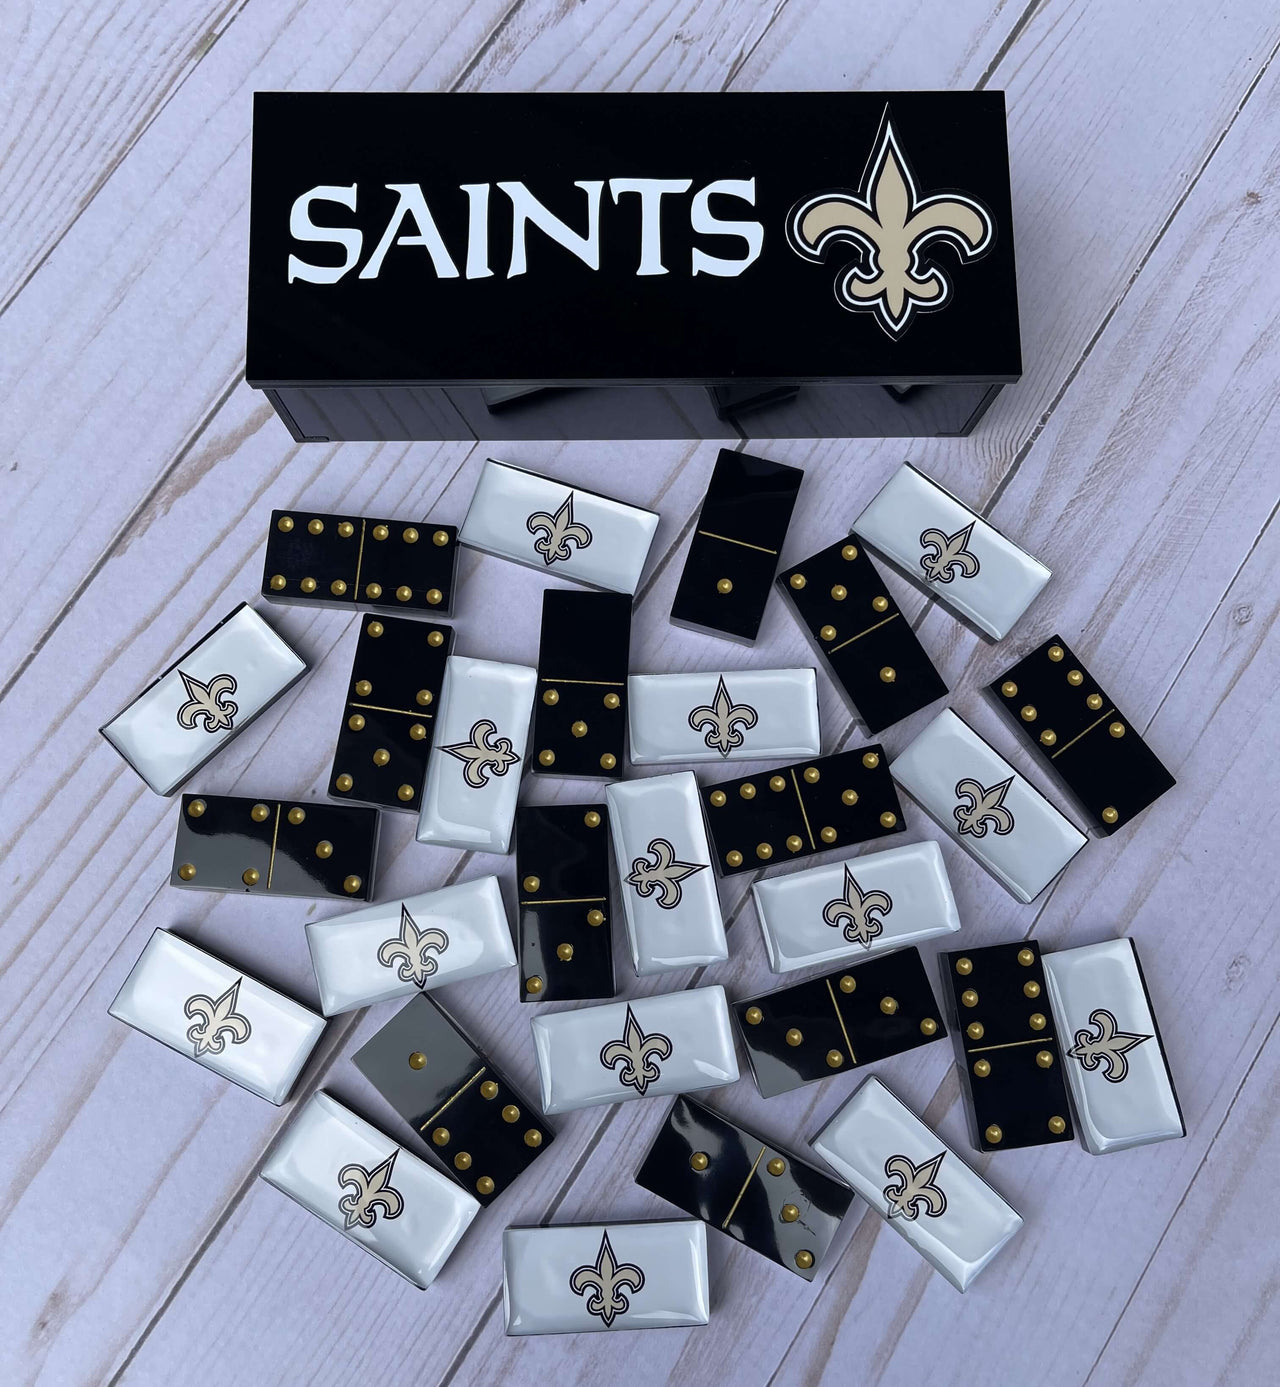 New Orleans Saints Dominoes Set American Football NFL Custom Resin Dominoes